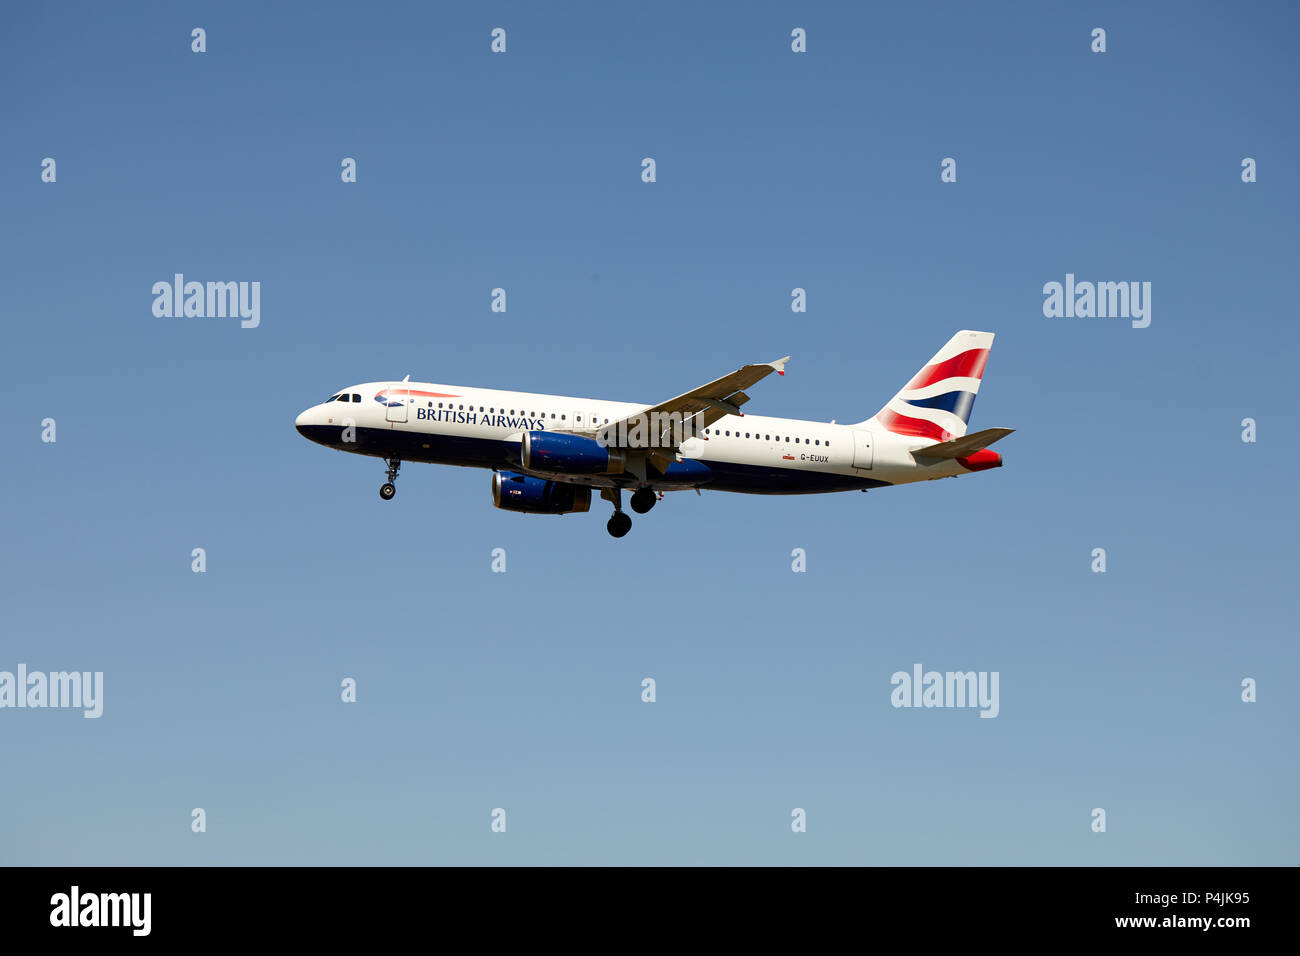 Un British Airways Airbus A320-232 aircraft, numéro d'enregistrement G-EUUX, approche d'un atterrissage. Banque D'Images